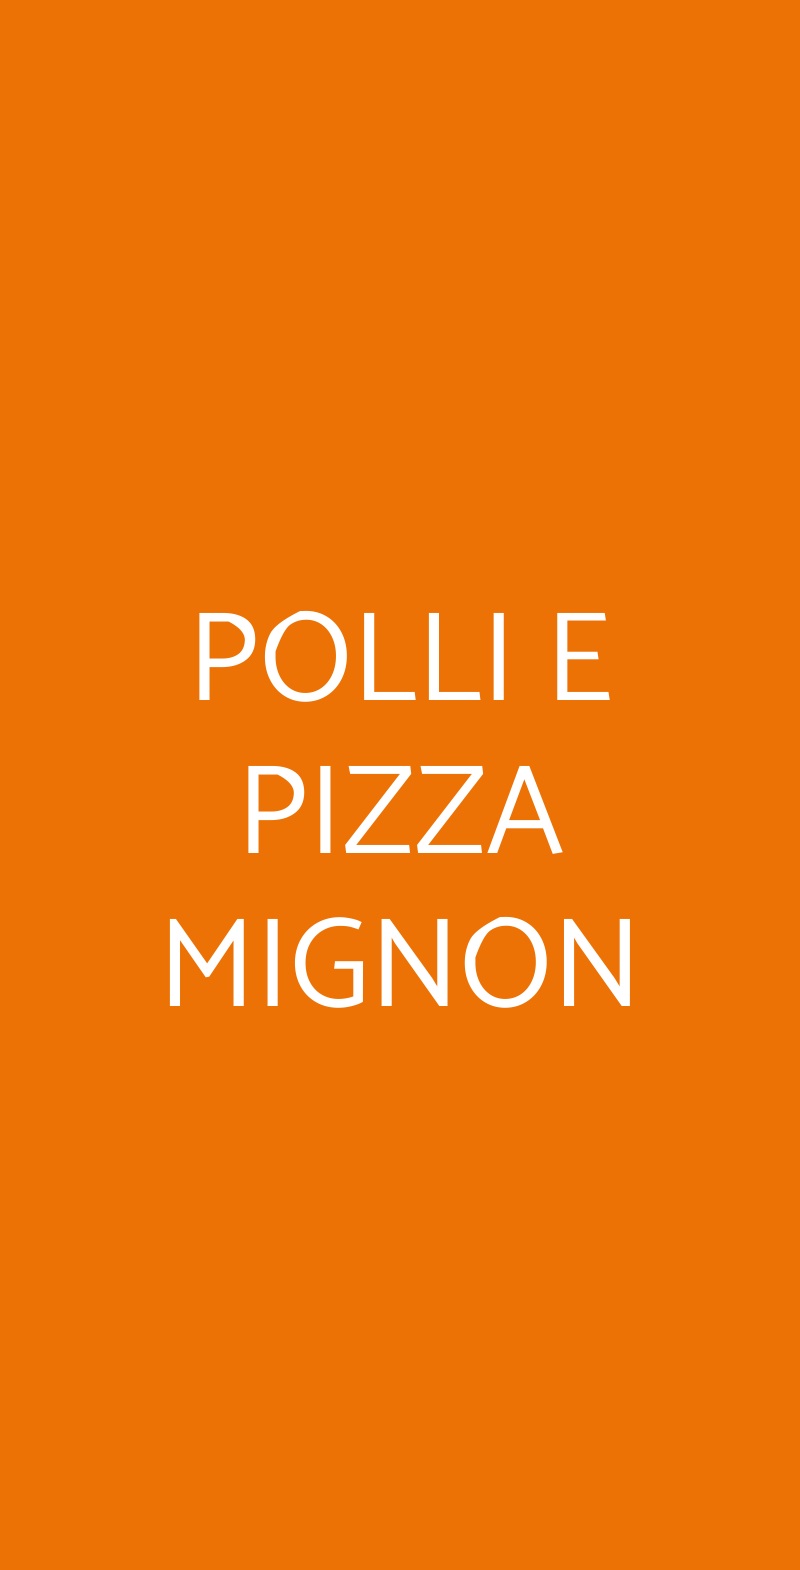 POLLI E PIZZA MIGNON Palermo menù 1 pagina